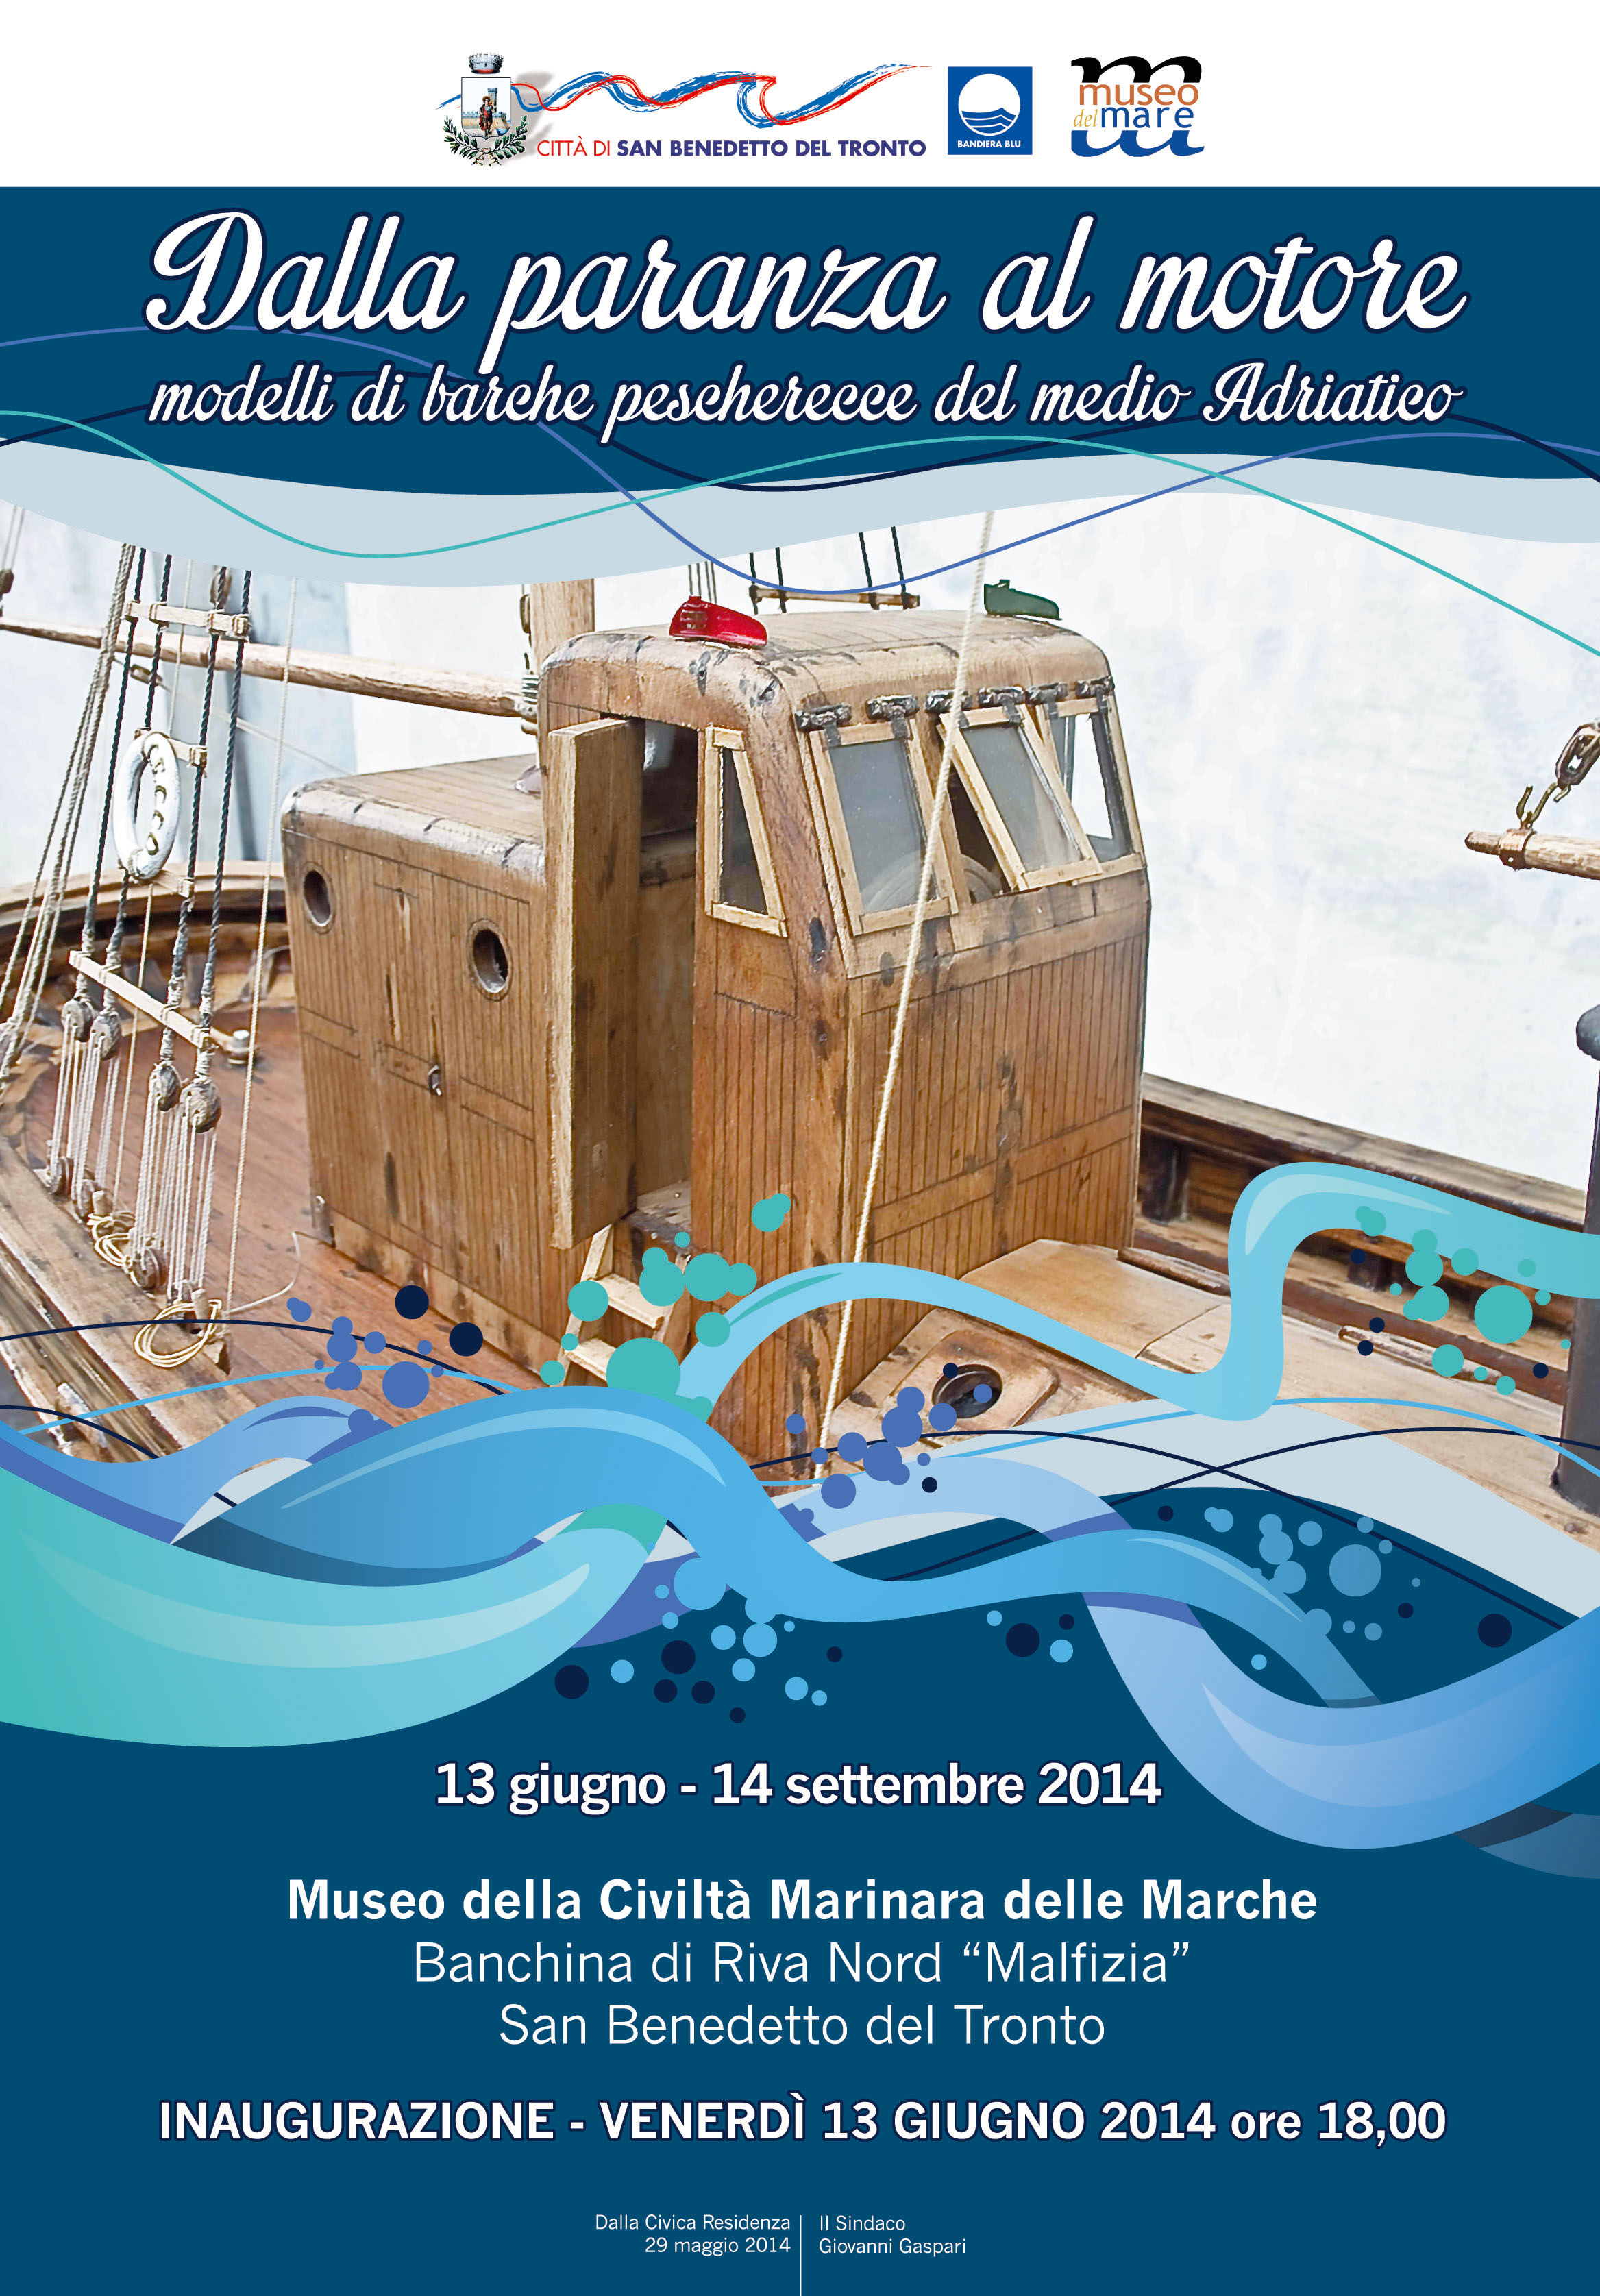 Mostra "Dalla paranza al motore" - modelli di barche pescherecce del medio Adriatico